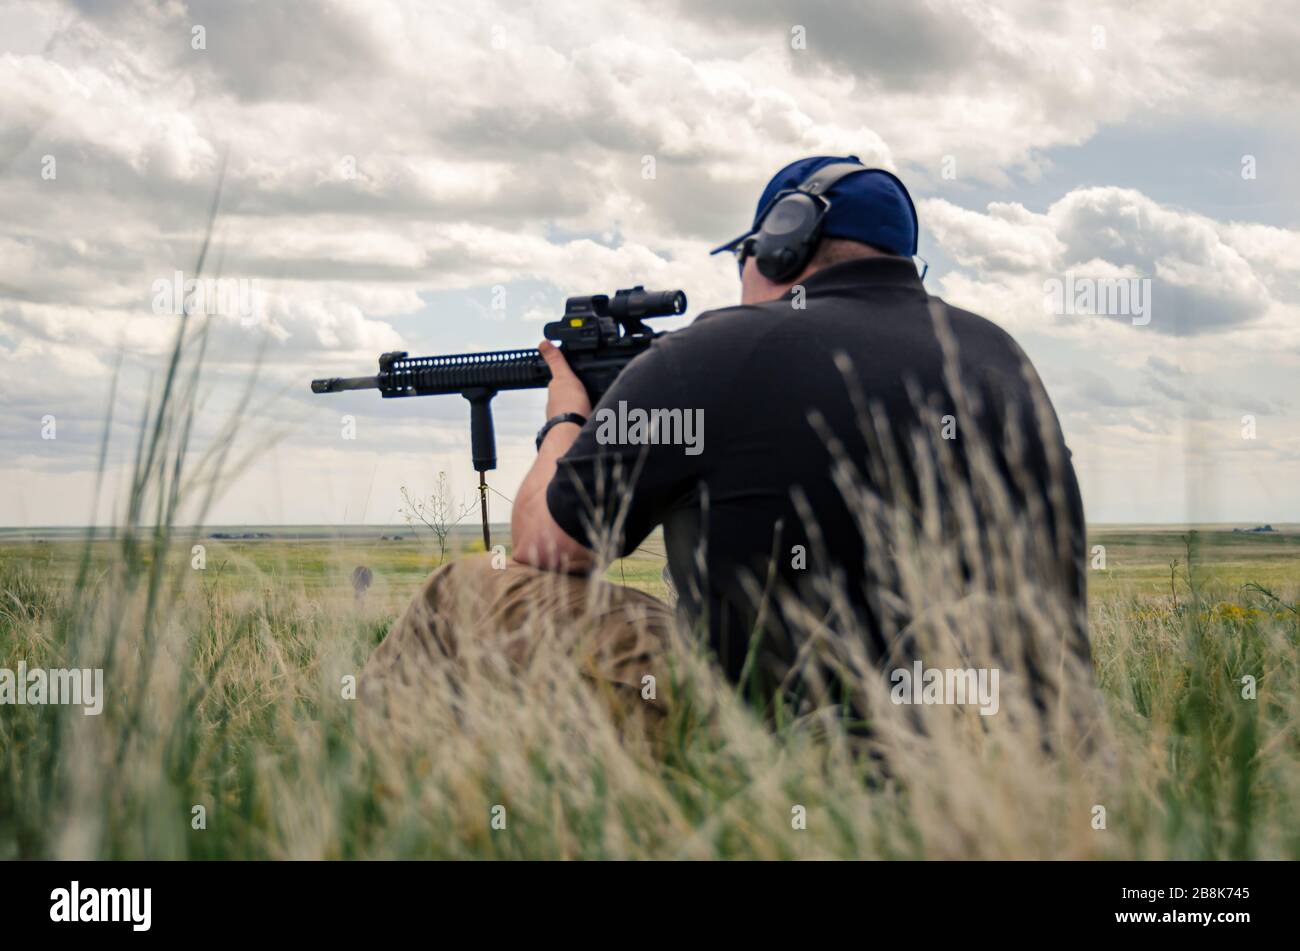 Mann sitzt und feuert automatisches Gewehr.Waffen Training und Live-Beschuss auf offener Waffenpalette, amerikanische Kultur Fort Collins USA Stockfoto